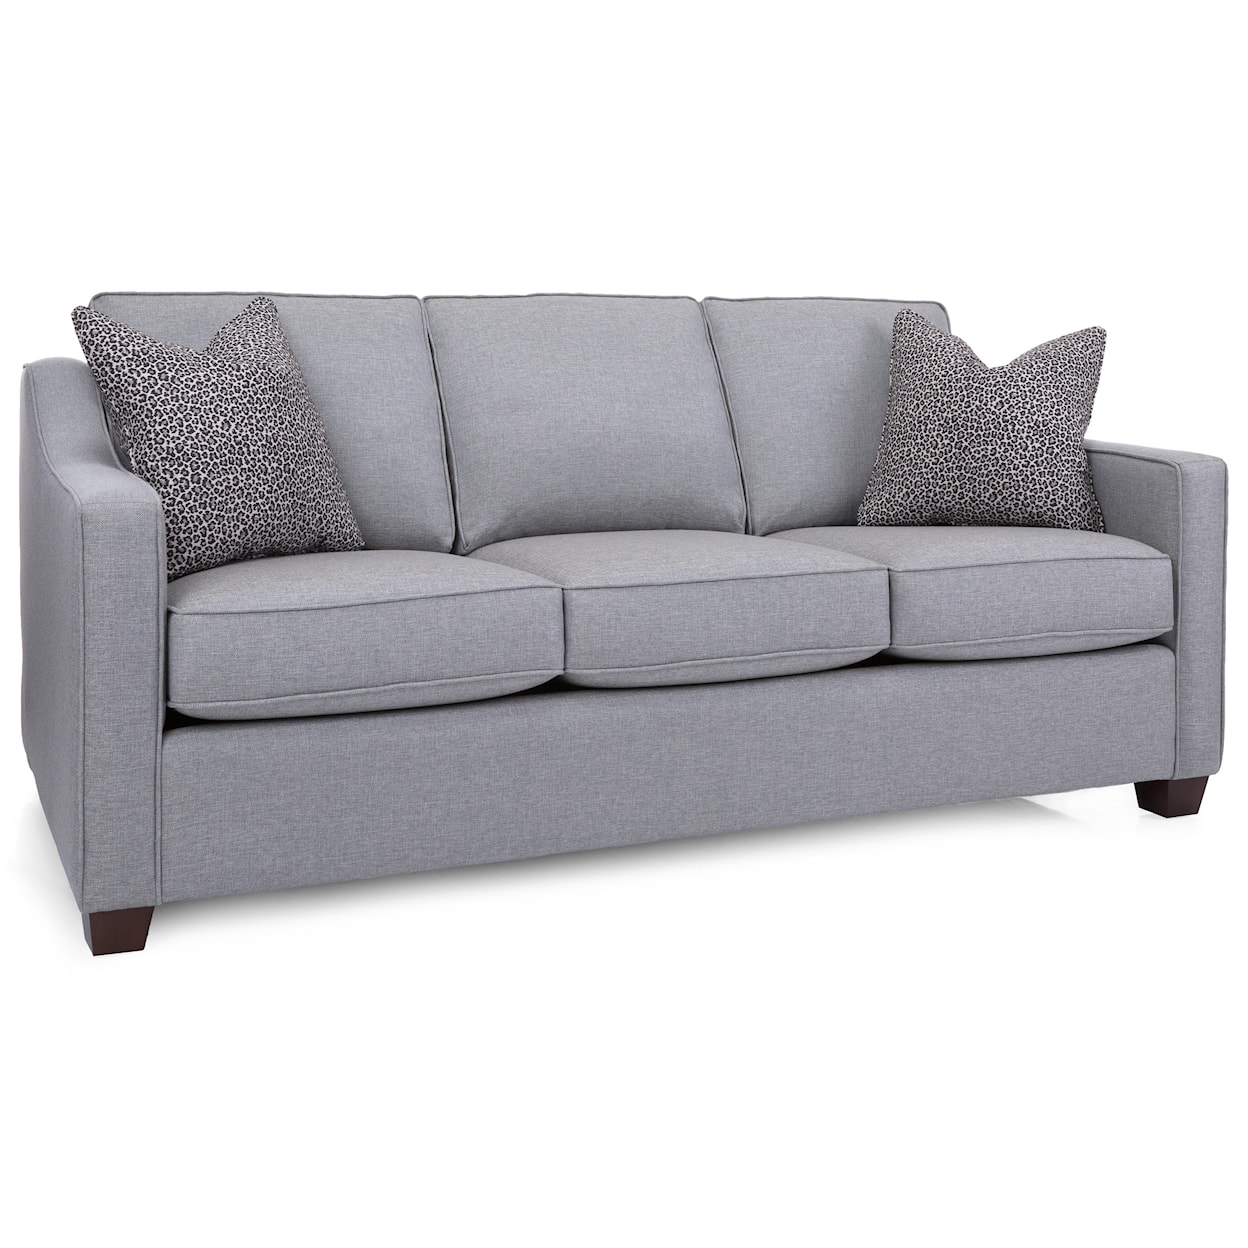 Taelor Designs Mena Sofa